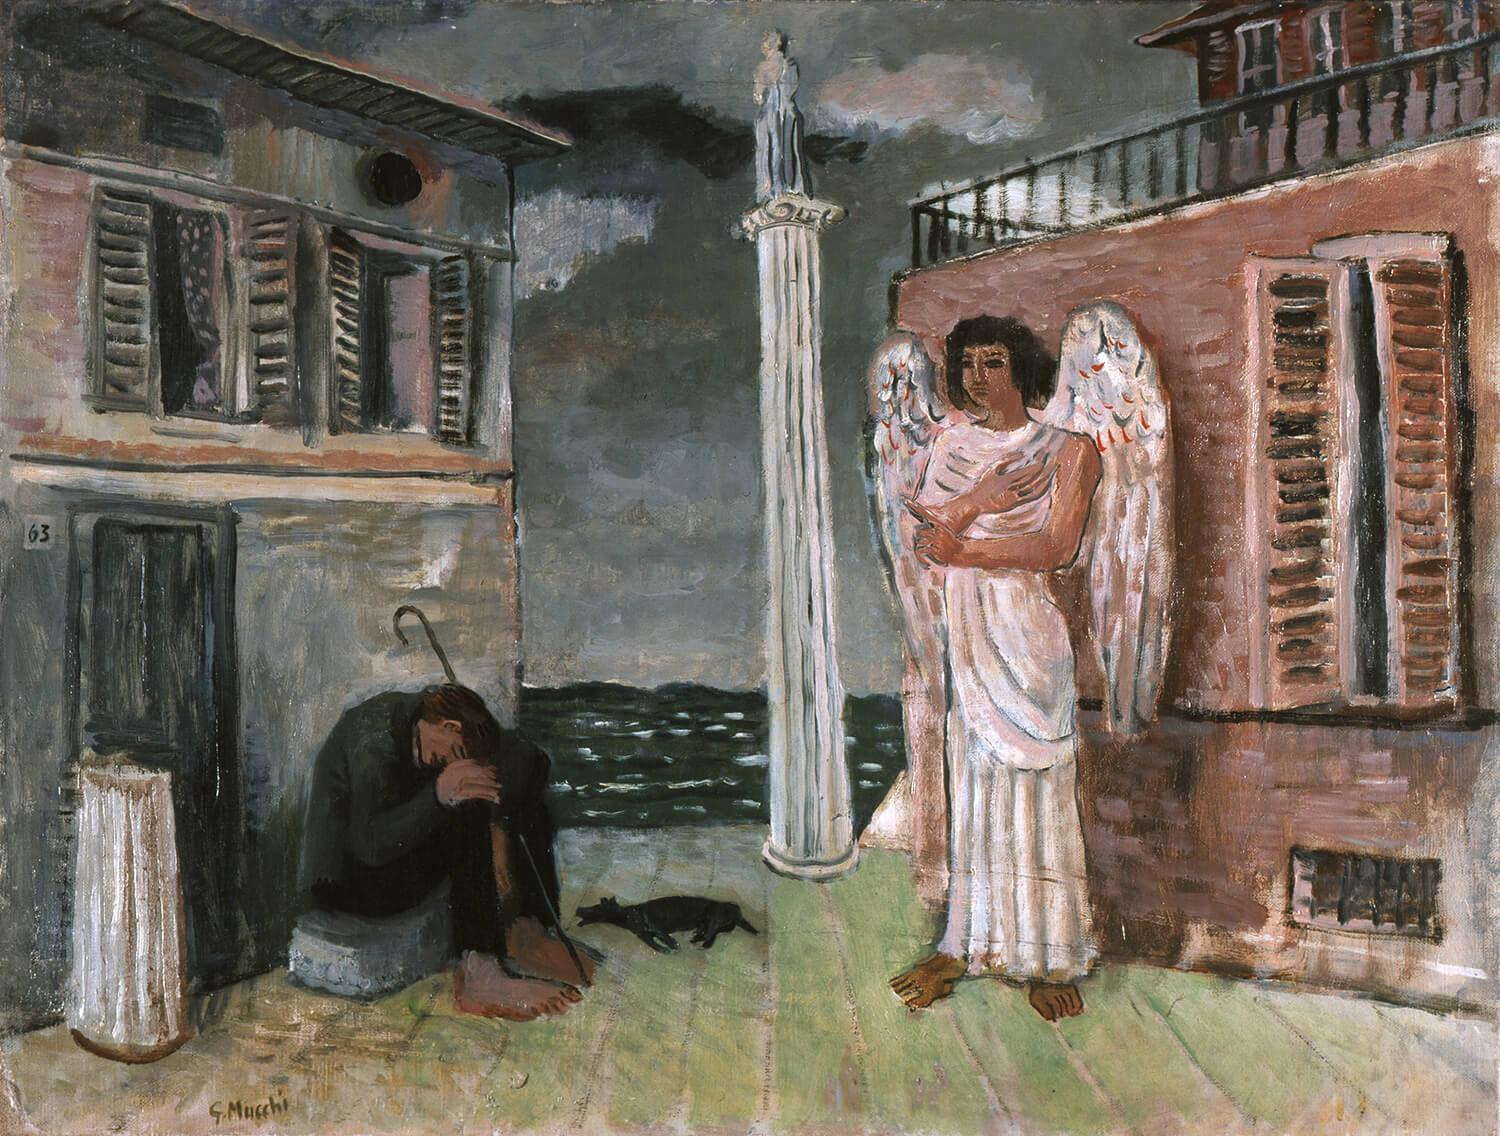 Gabriele Mucchi, Der müde Wanderer, 1931, Öl auf Leinwand, 50 x 64 cm